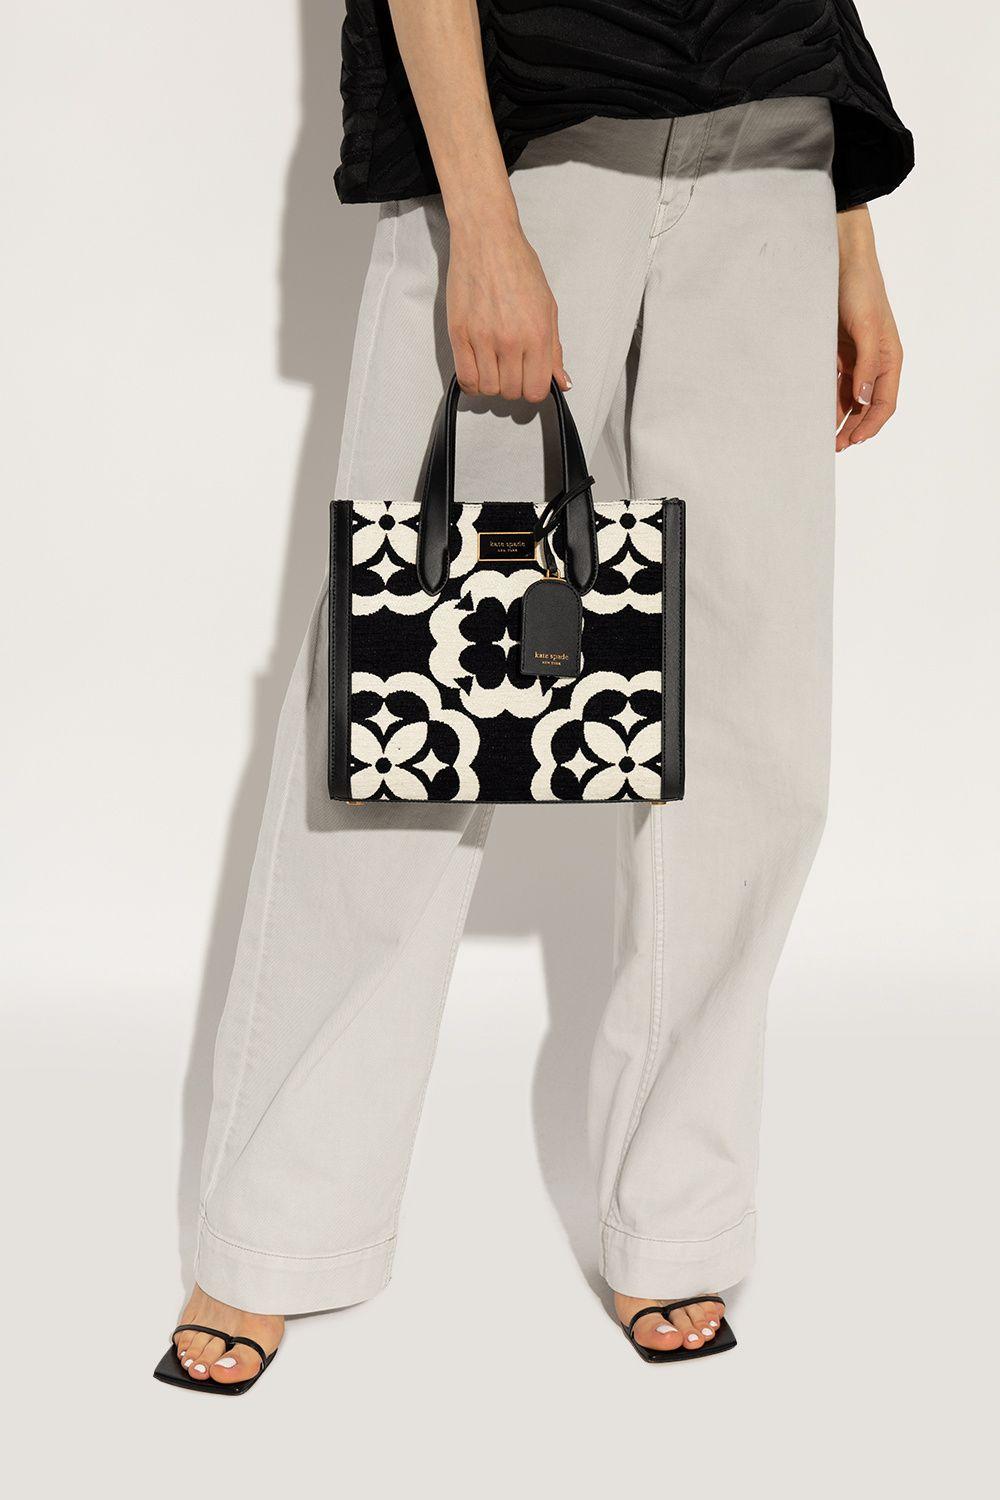 Kate Spade 'manhattan Small' Shopper Bag in Black